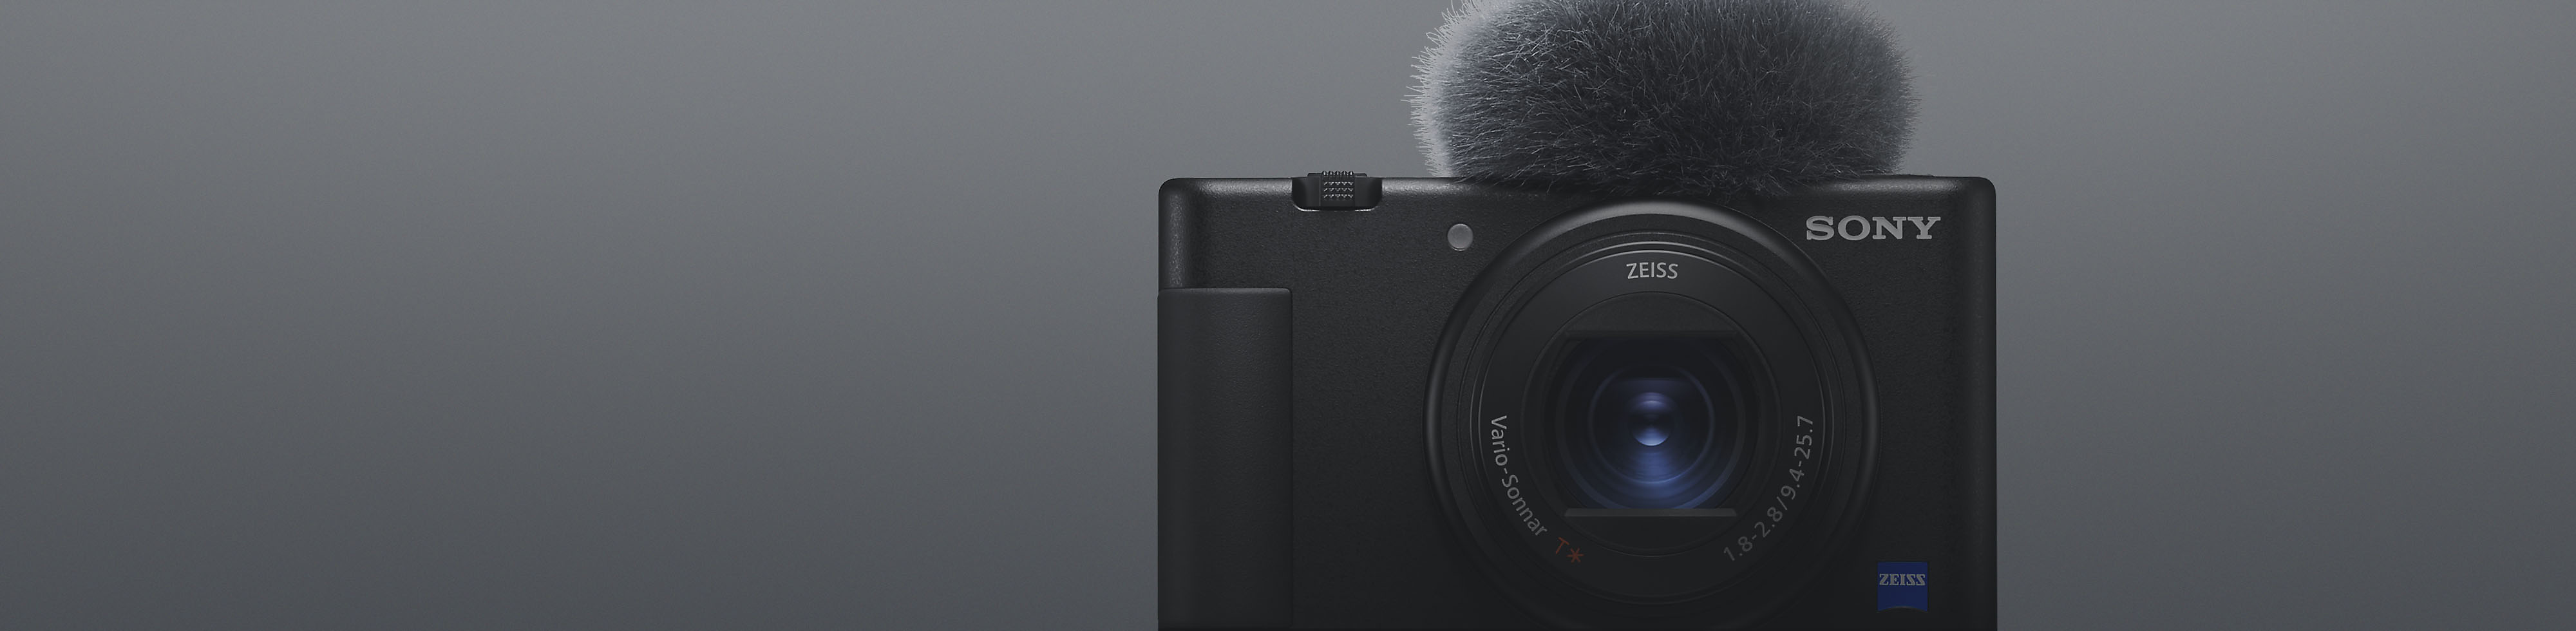 Frontalansicht einer schwarzen Kompaktkamera von Sony mit angebrachtem Mikrofon